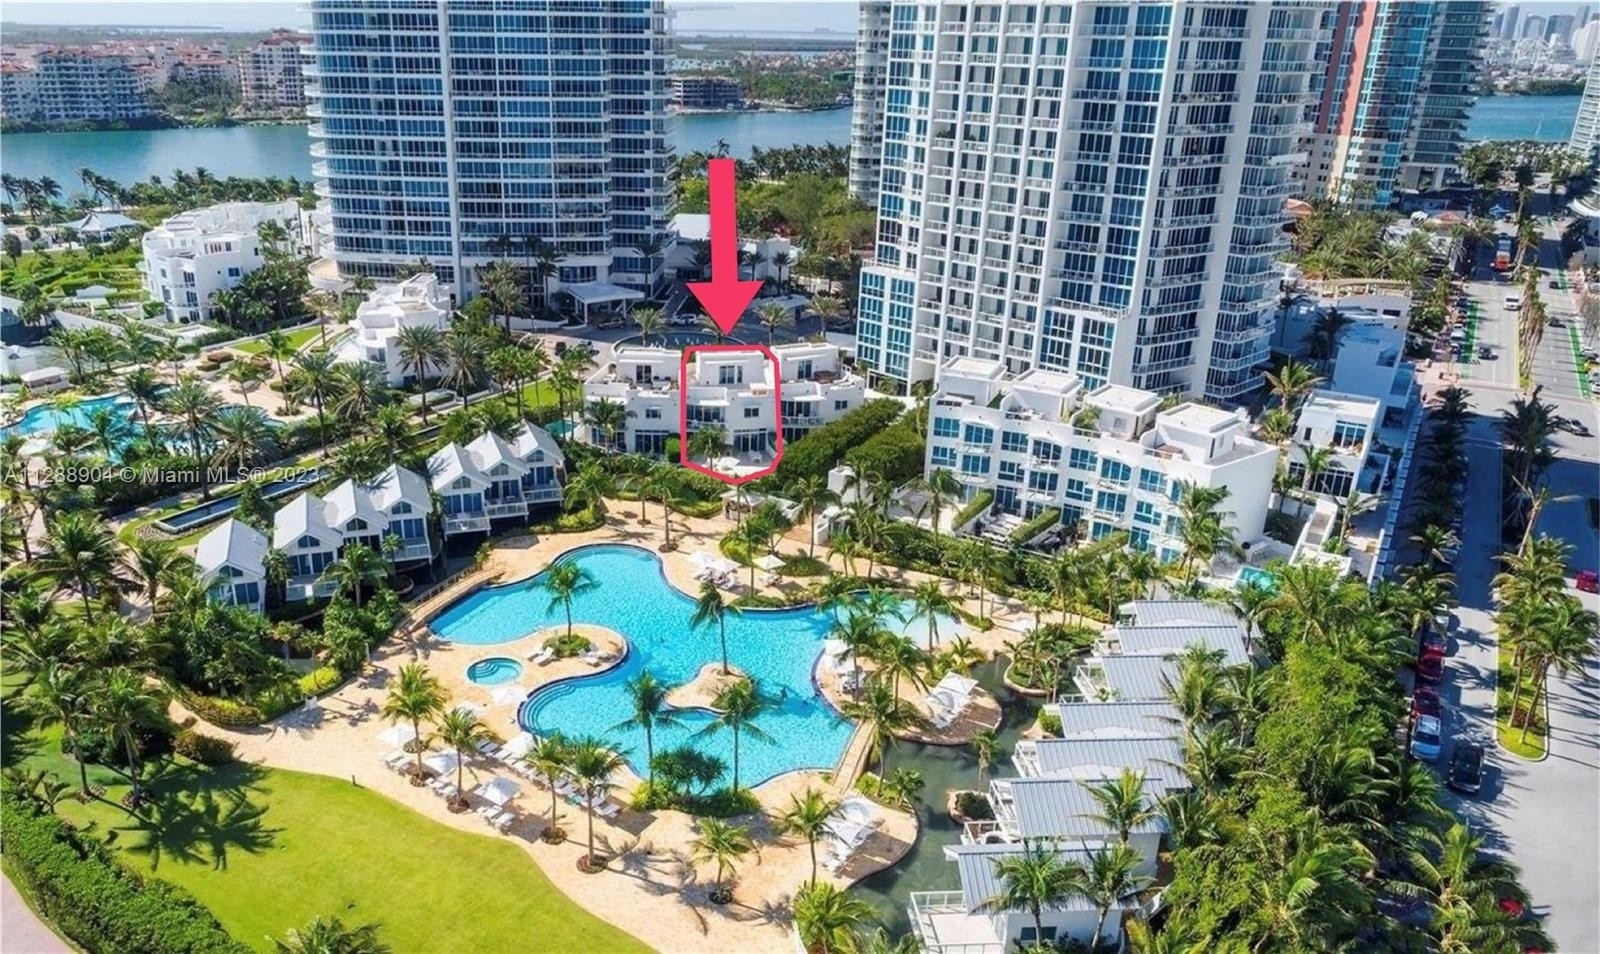 Property at 50 S Pointe Dr, TWN2 South Point, Miami Beach, Florida 33139